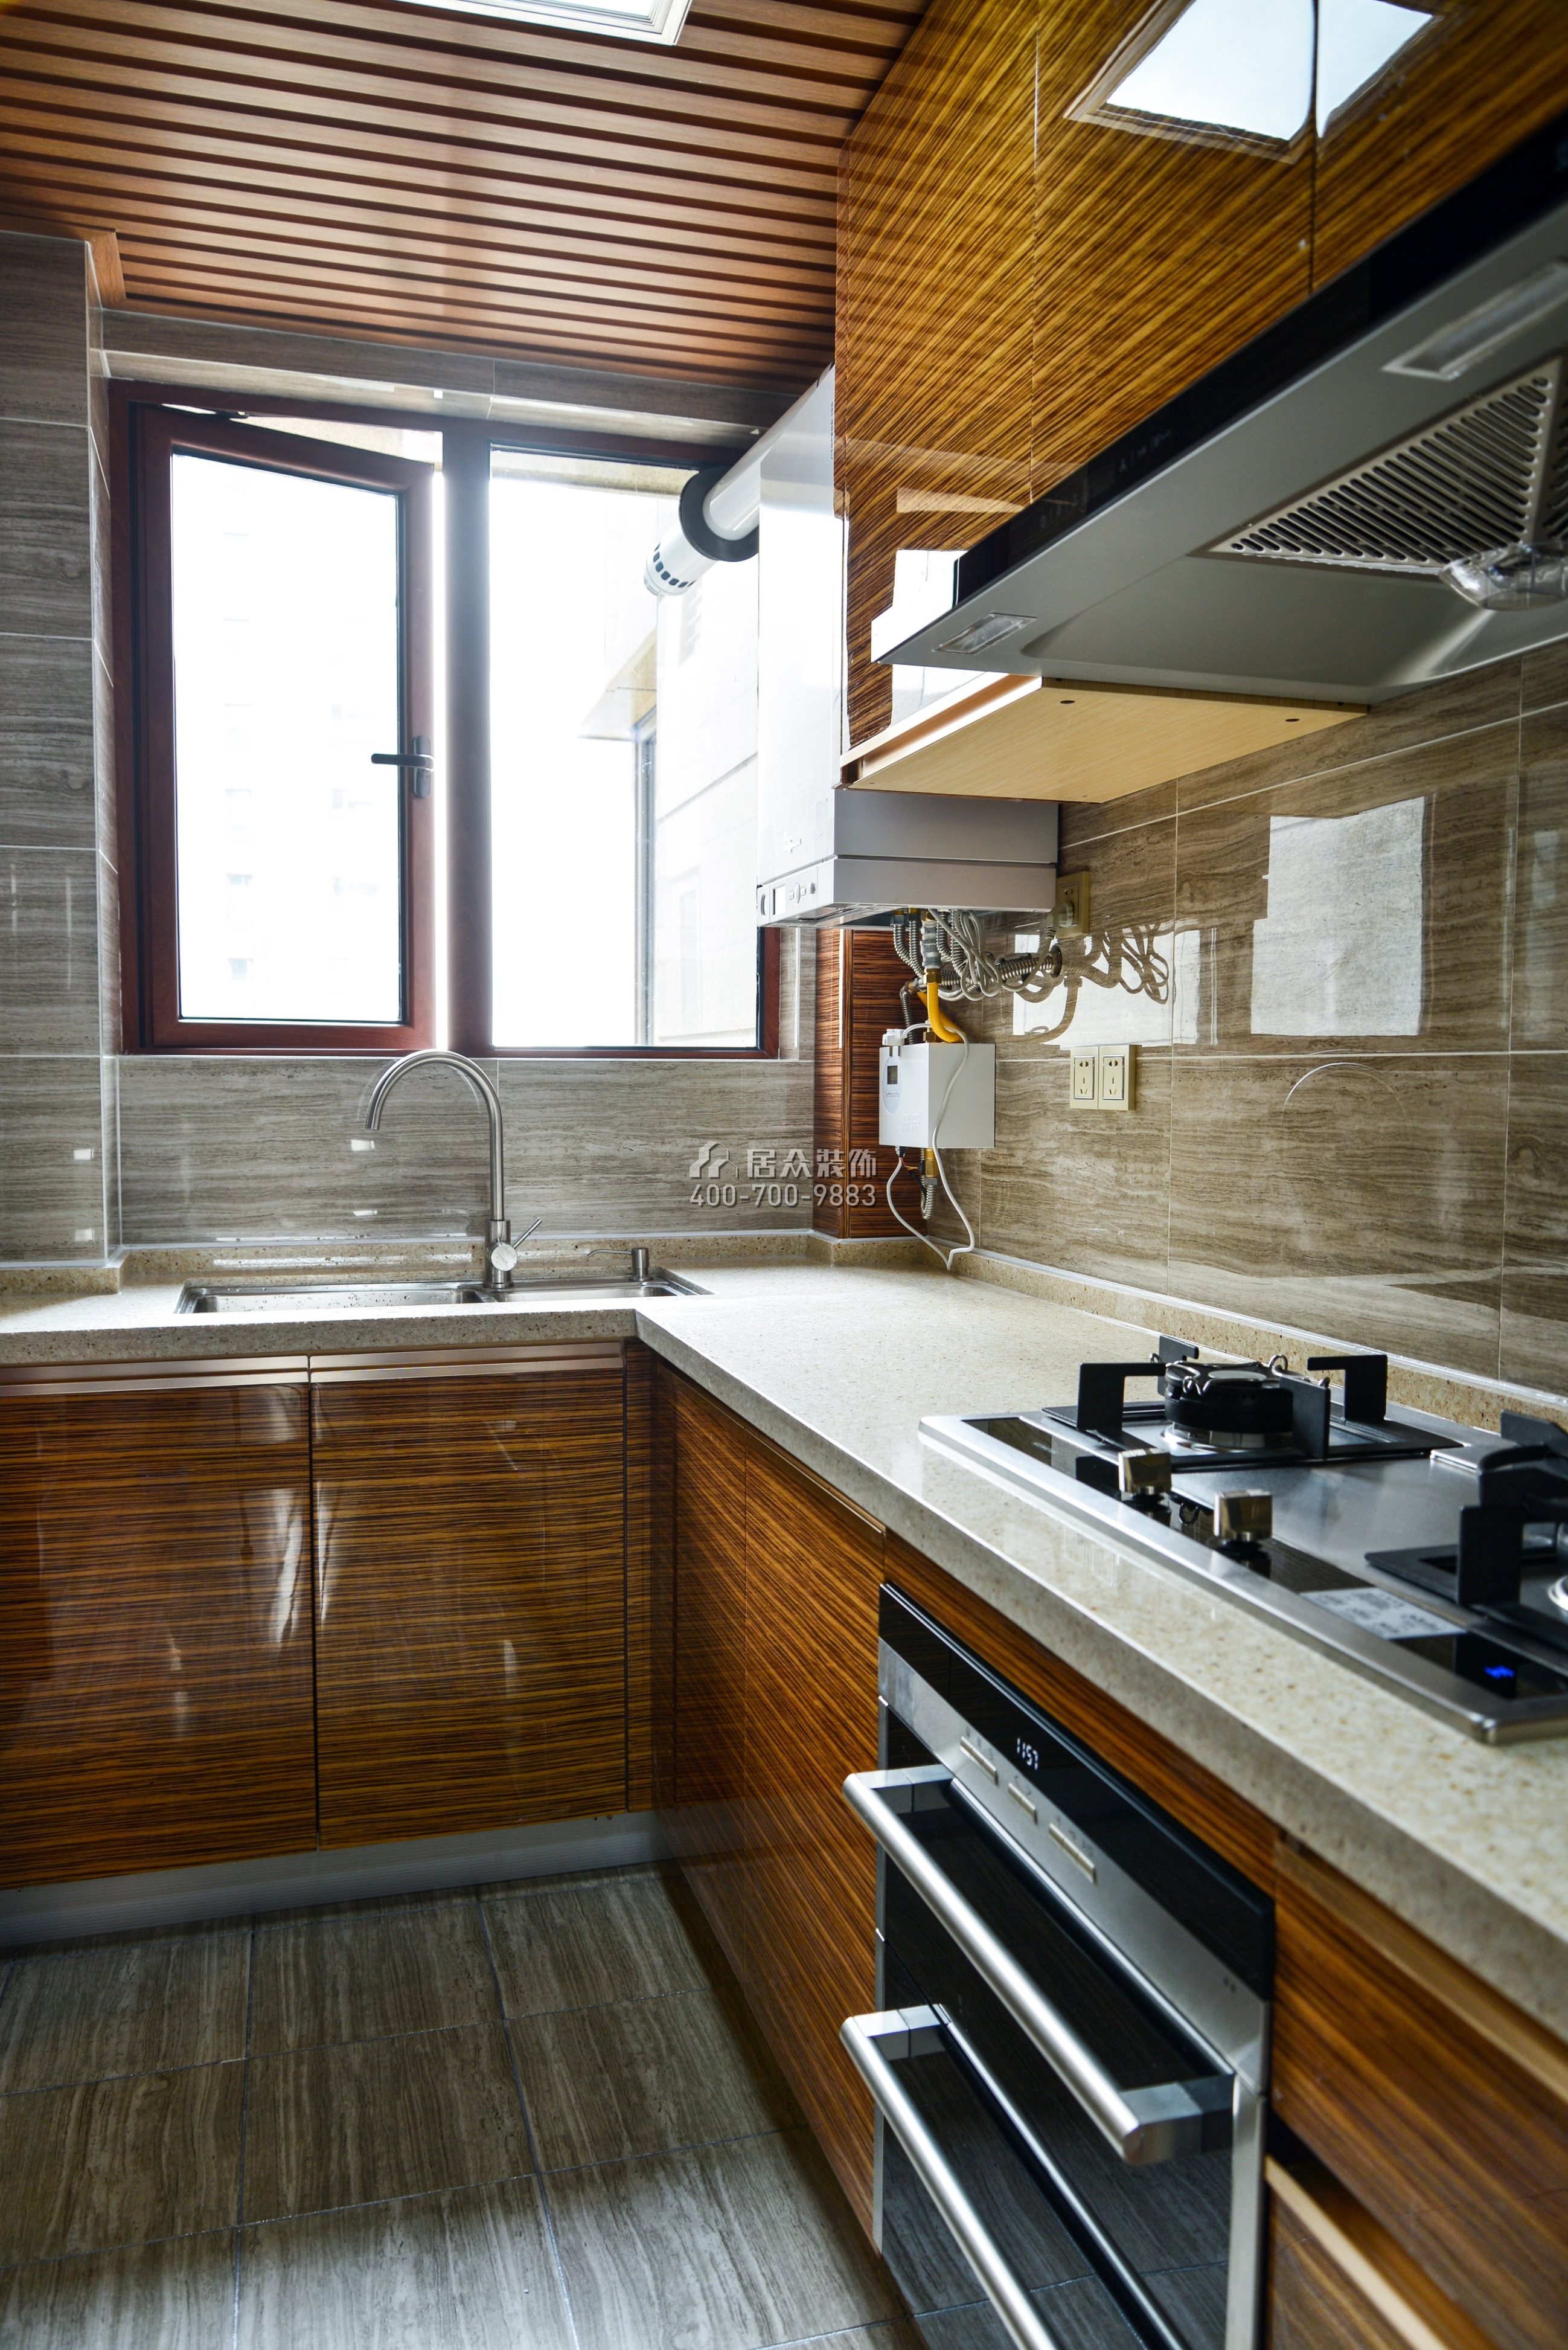 保利国际广场160平方米中式风格平层户型厨房装修效果图